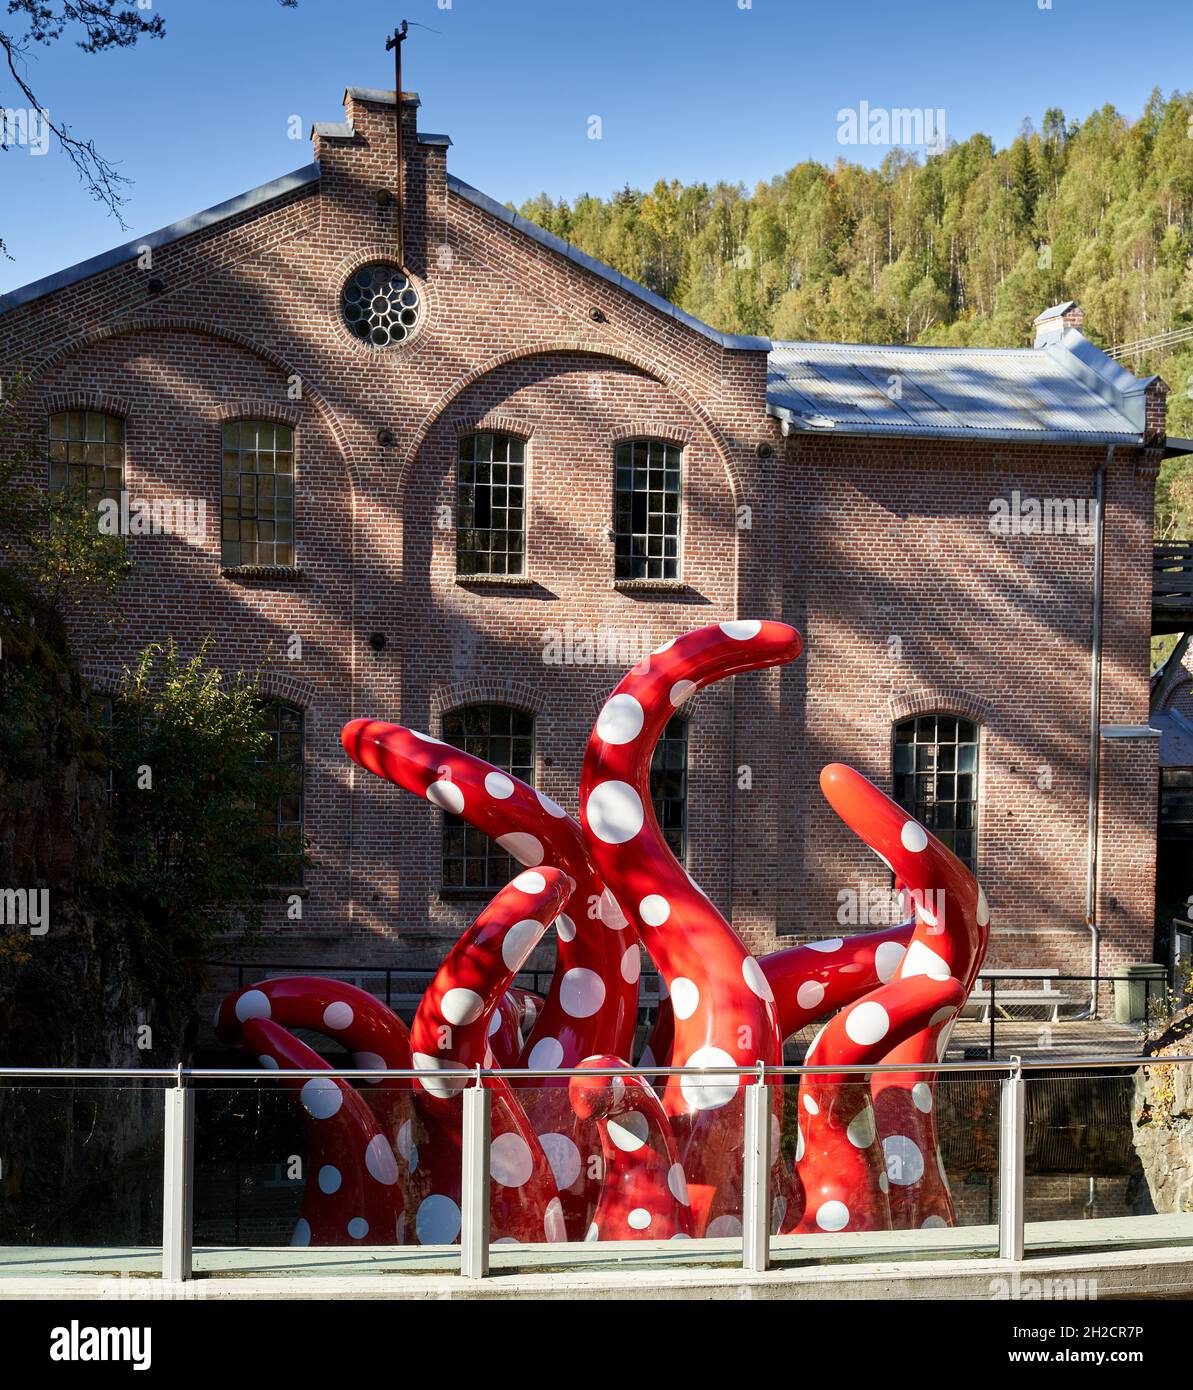 JEVNAKER, NORWEGEN - 25. Sep 2021: Die Yayoi Kusama Shine of Life Skulptur, die vor einem Gebäude in Jevnaker, Norwegen, ausgestellt ist Stockfoto